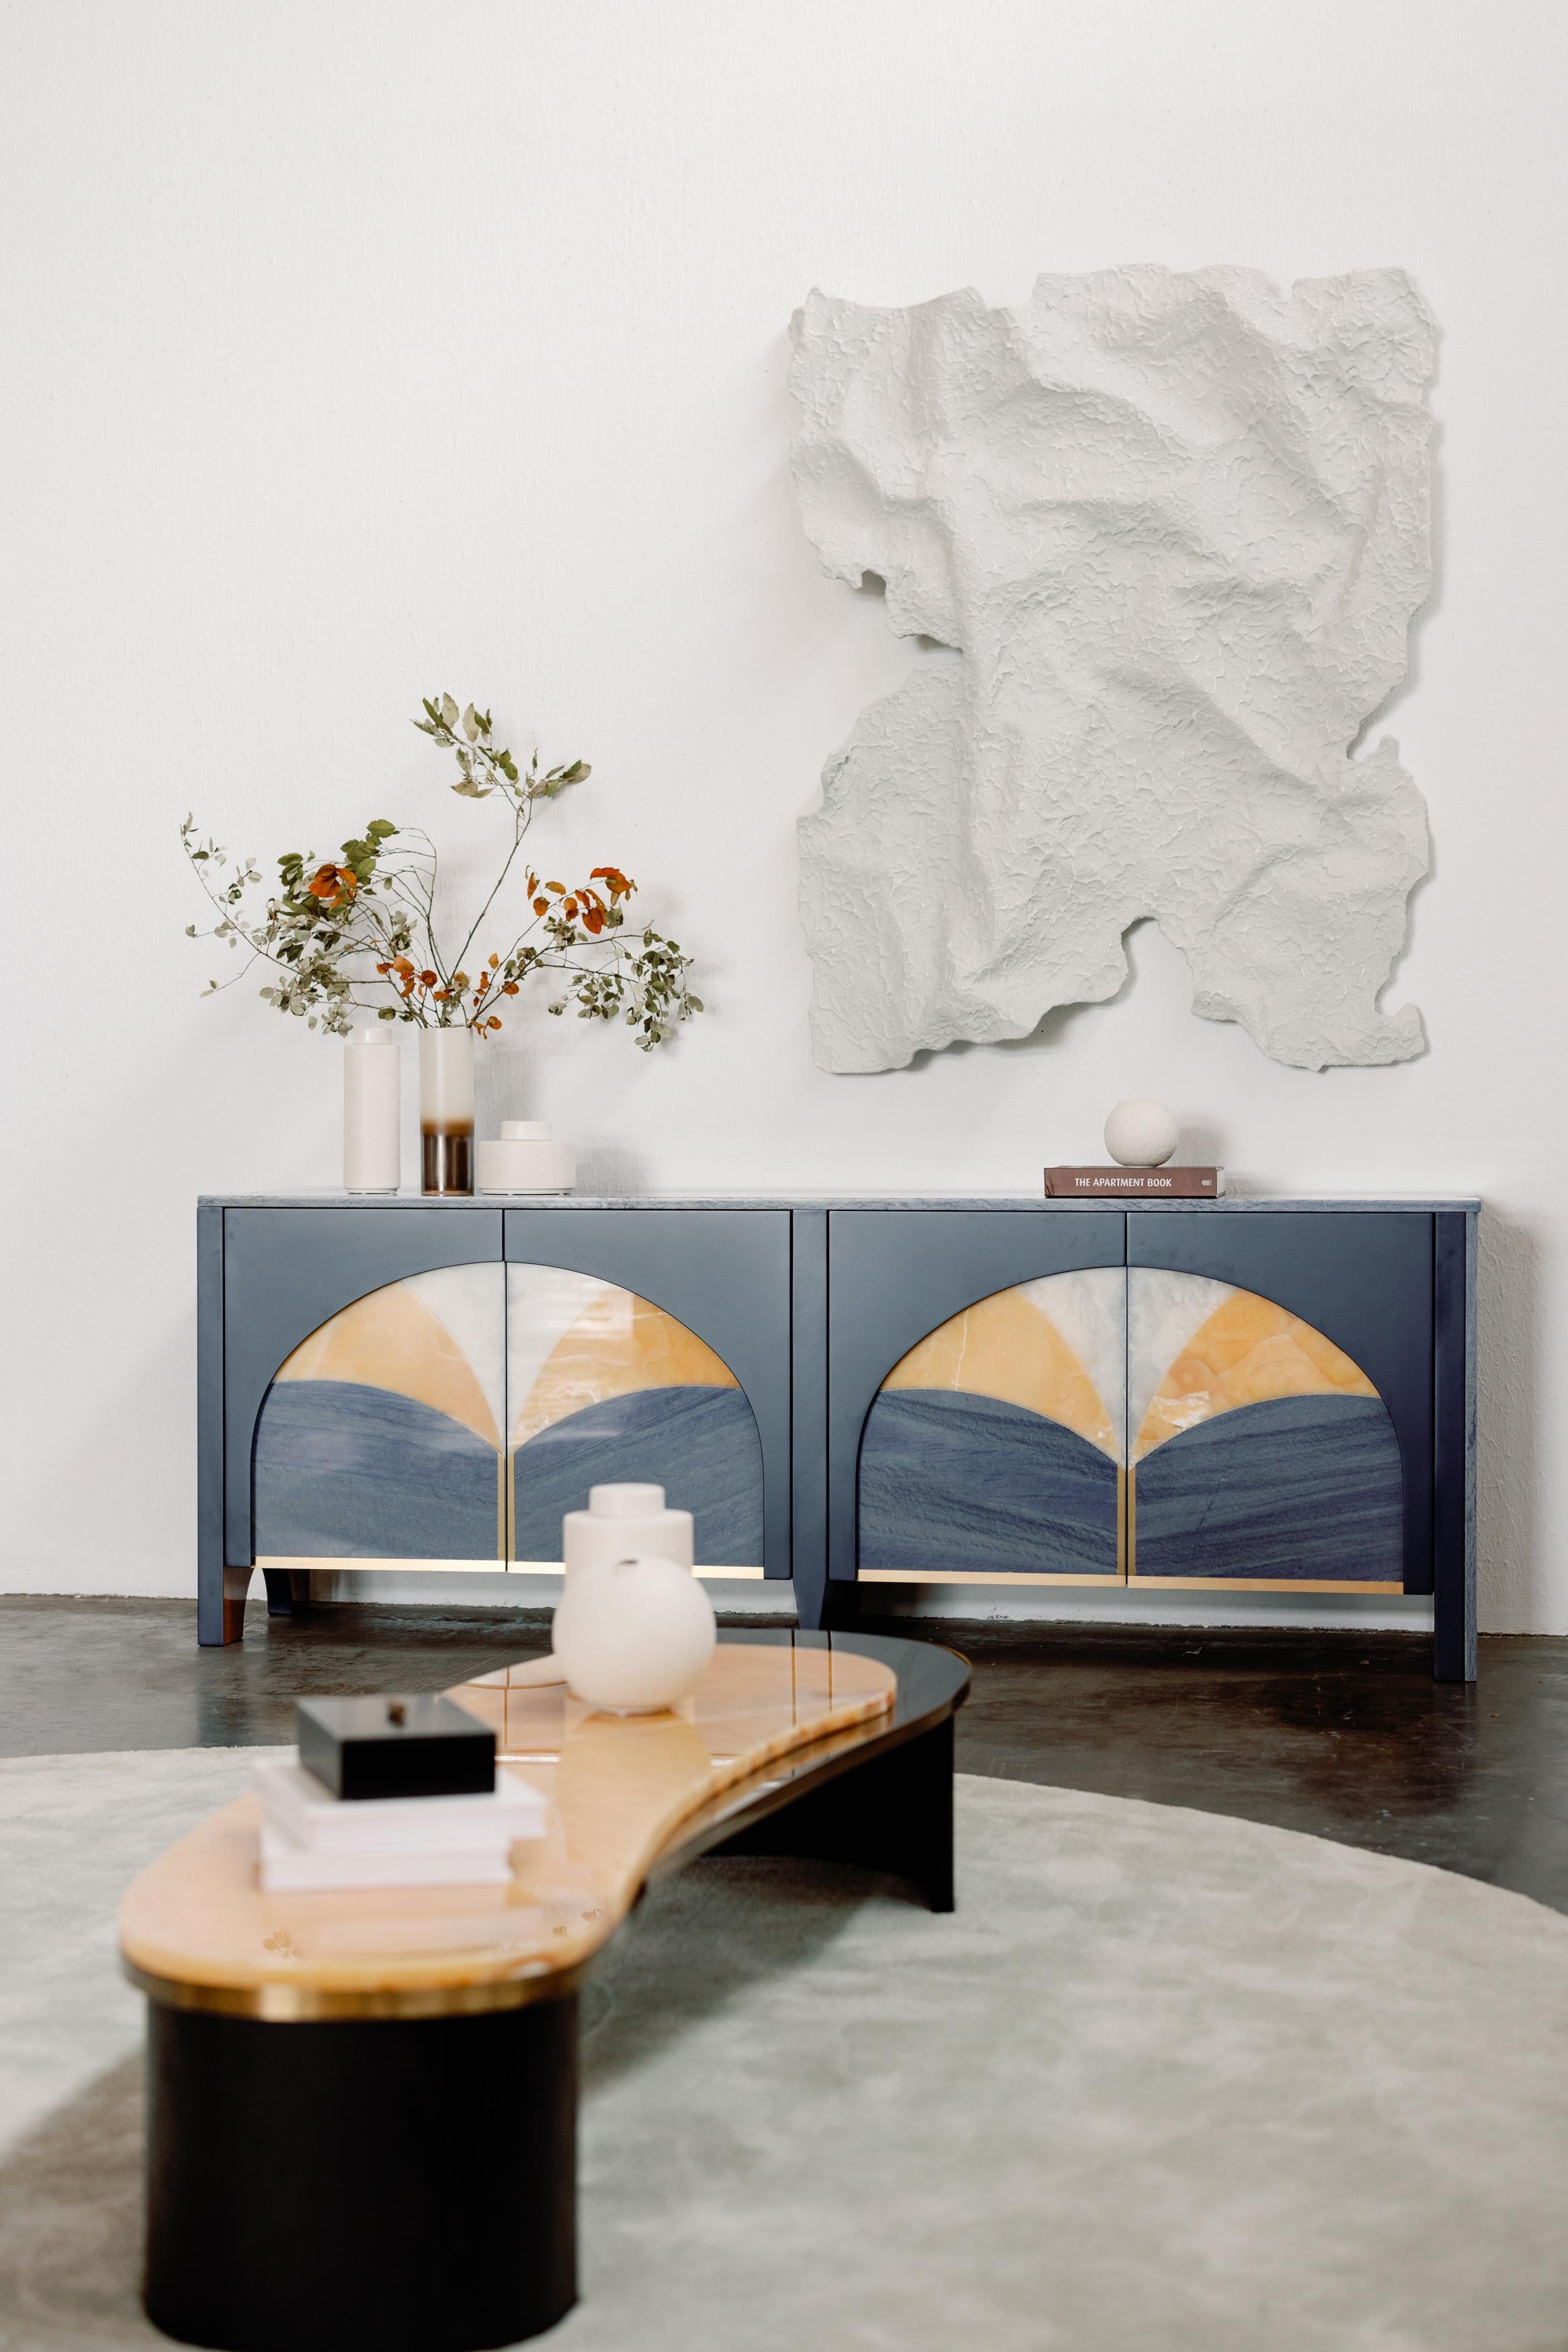 Armona Couchtisch, Collection'S Contemporary, handgefertigt in Portugal - Europa von Greenapple.

Der moderne Couchtisch Armona wurde von Rute Martins für die Contemporary Collection entworfen und ist eine Hommage an die natürliche Schönheit und die